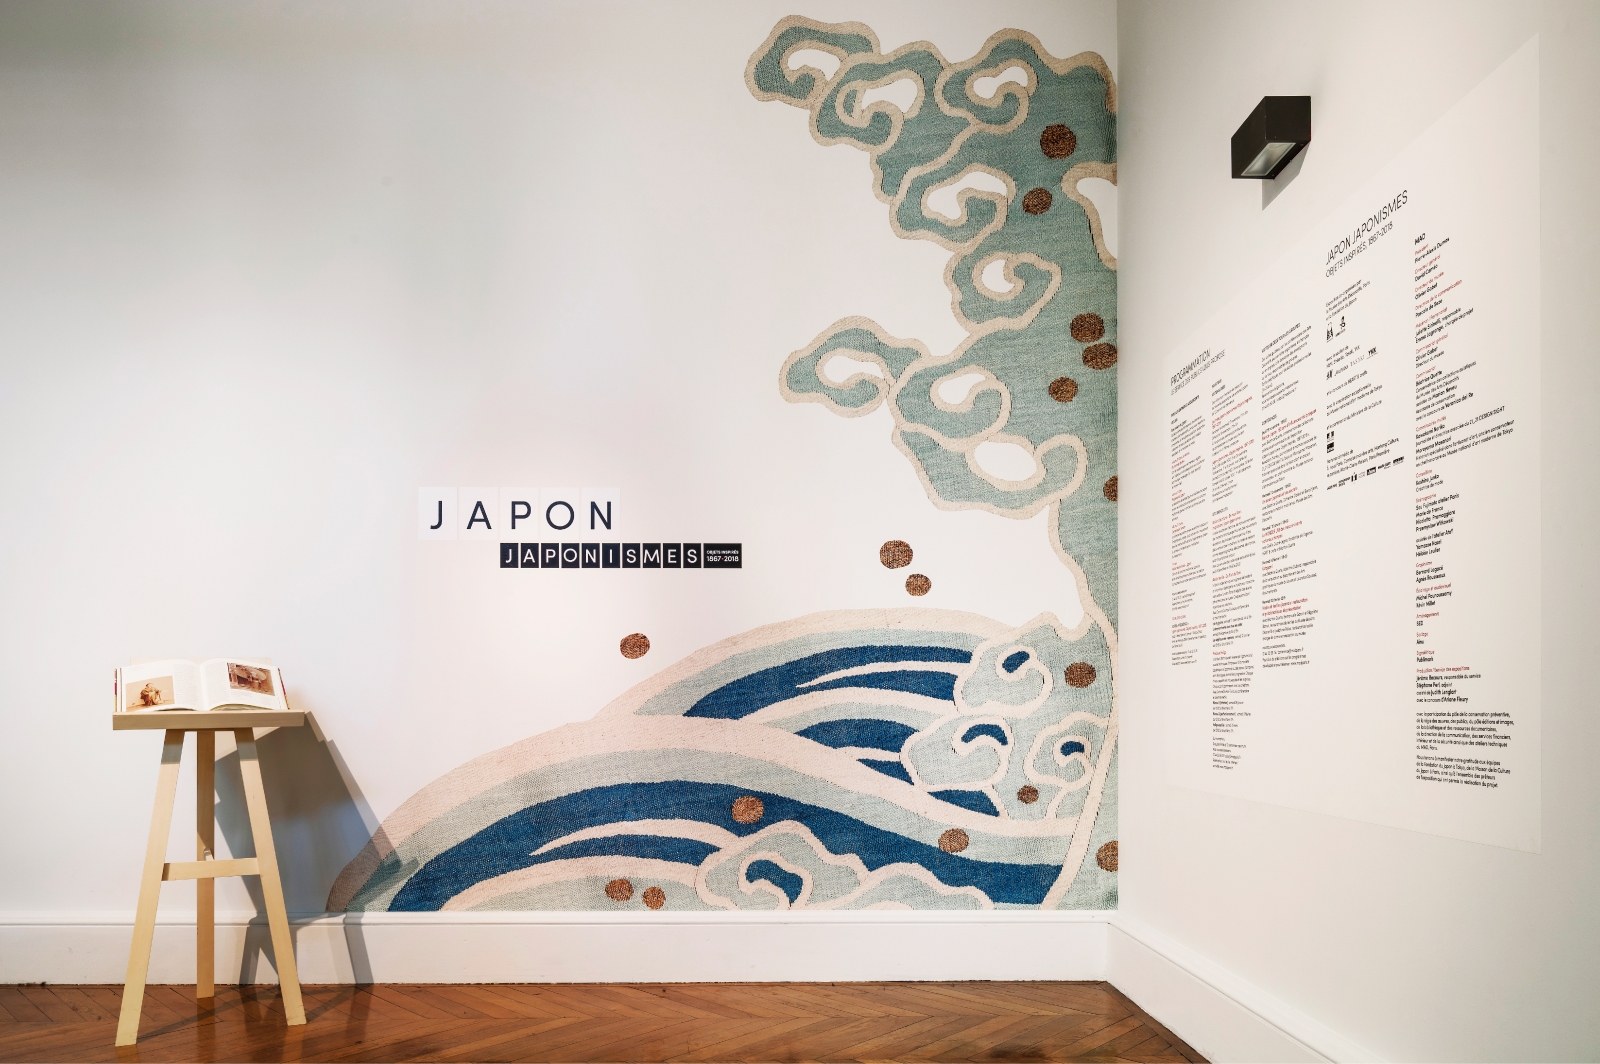 Japon-Japonisme. Objets inspirés, 1867-2018